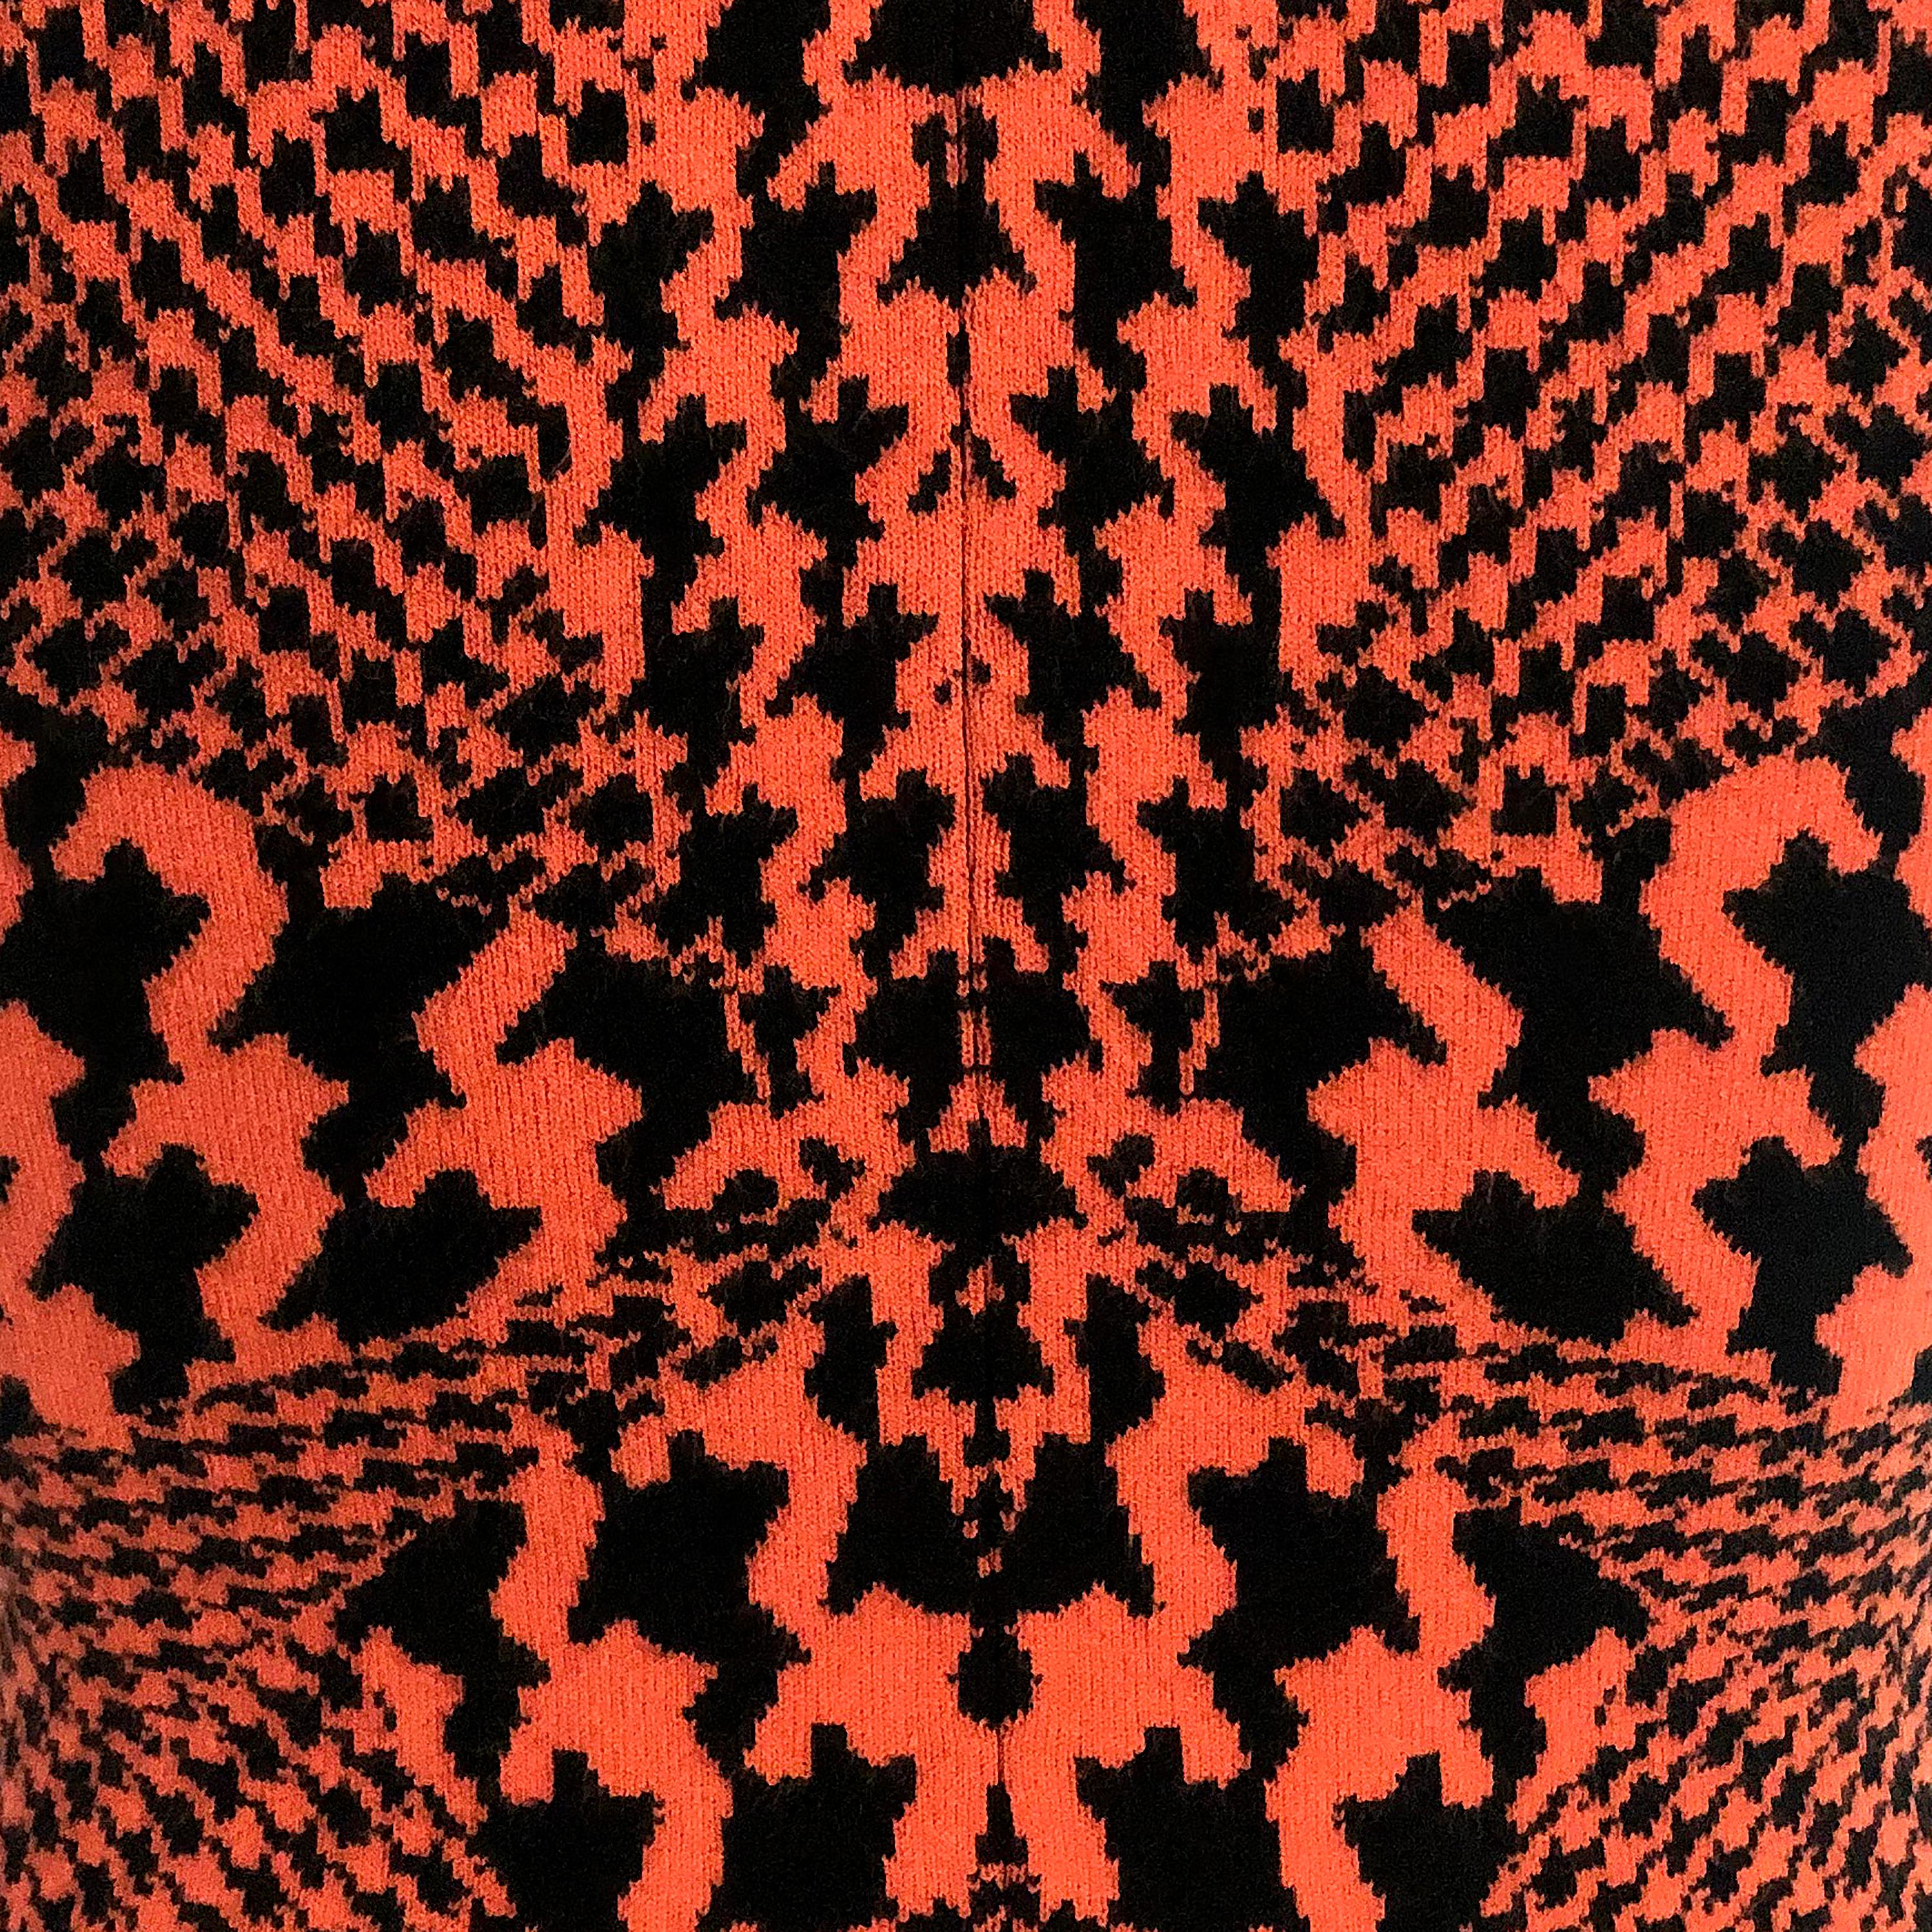 Détails du produit : Alexander McQueen Dress - Multi Dogtooth Knit / Burnt Orange + Black - Full Skirt - Sleeveless (sans manches)
Label : Alexander McQueen - McQ
Taille : XS (Convient à UK 8 à UK 12)
Contenu du tissu : Orange brûlé + noir - mélange